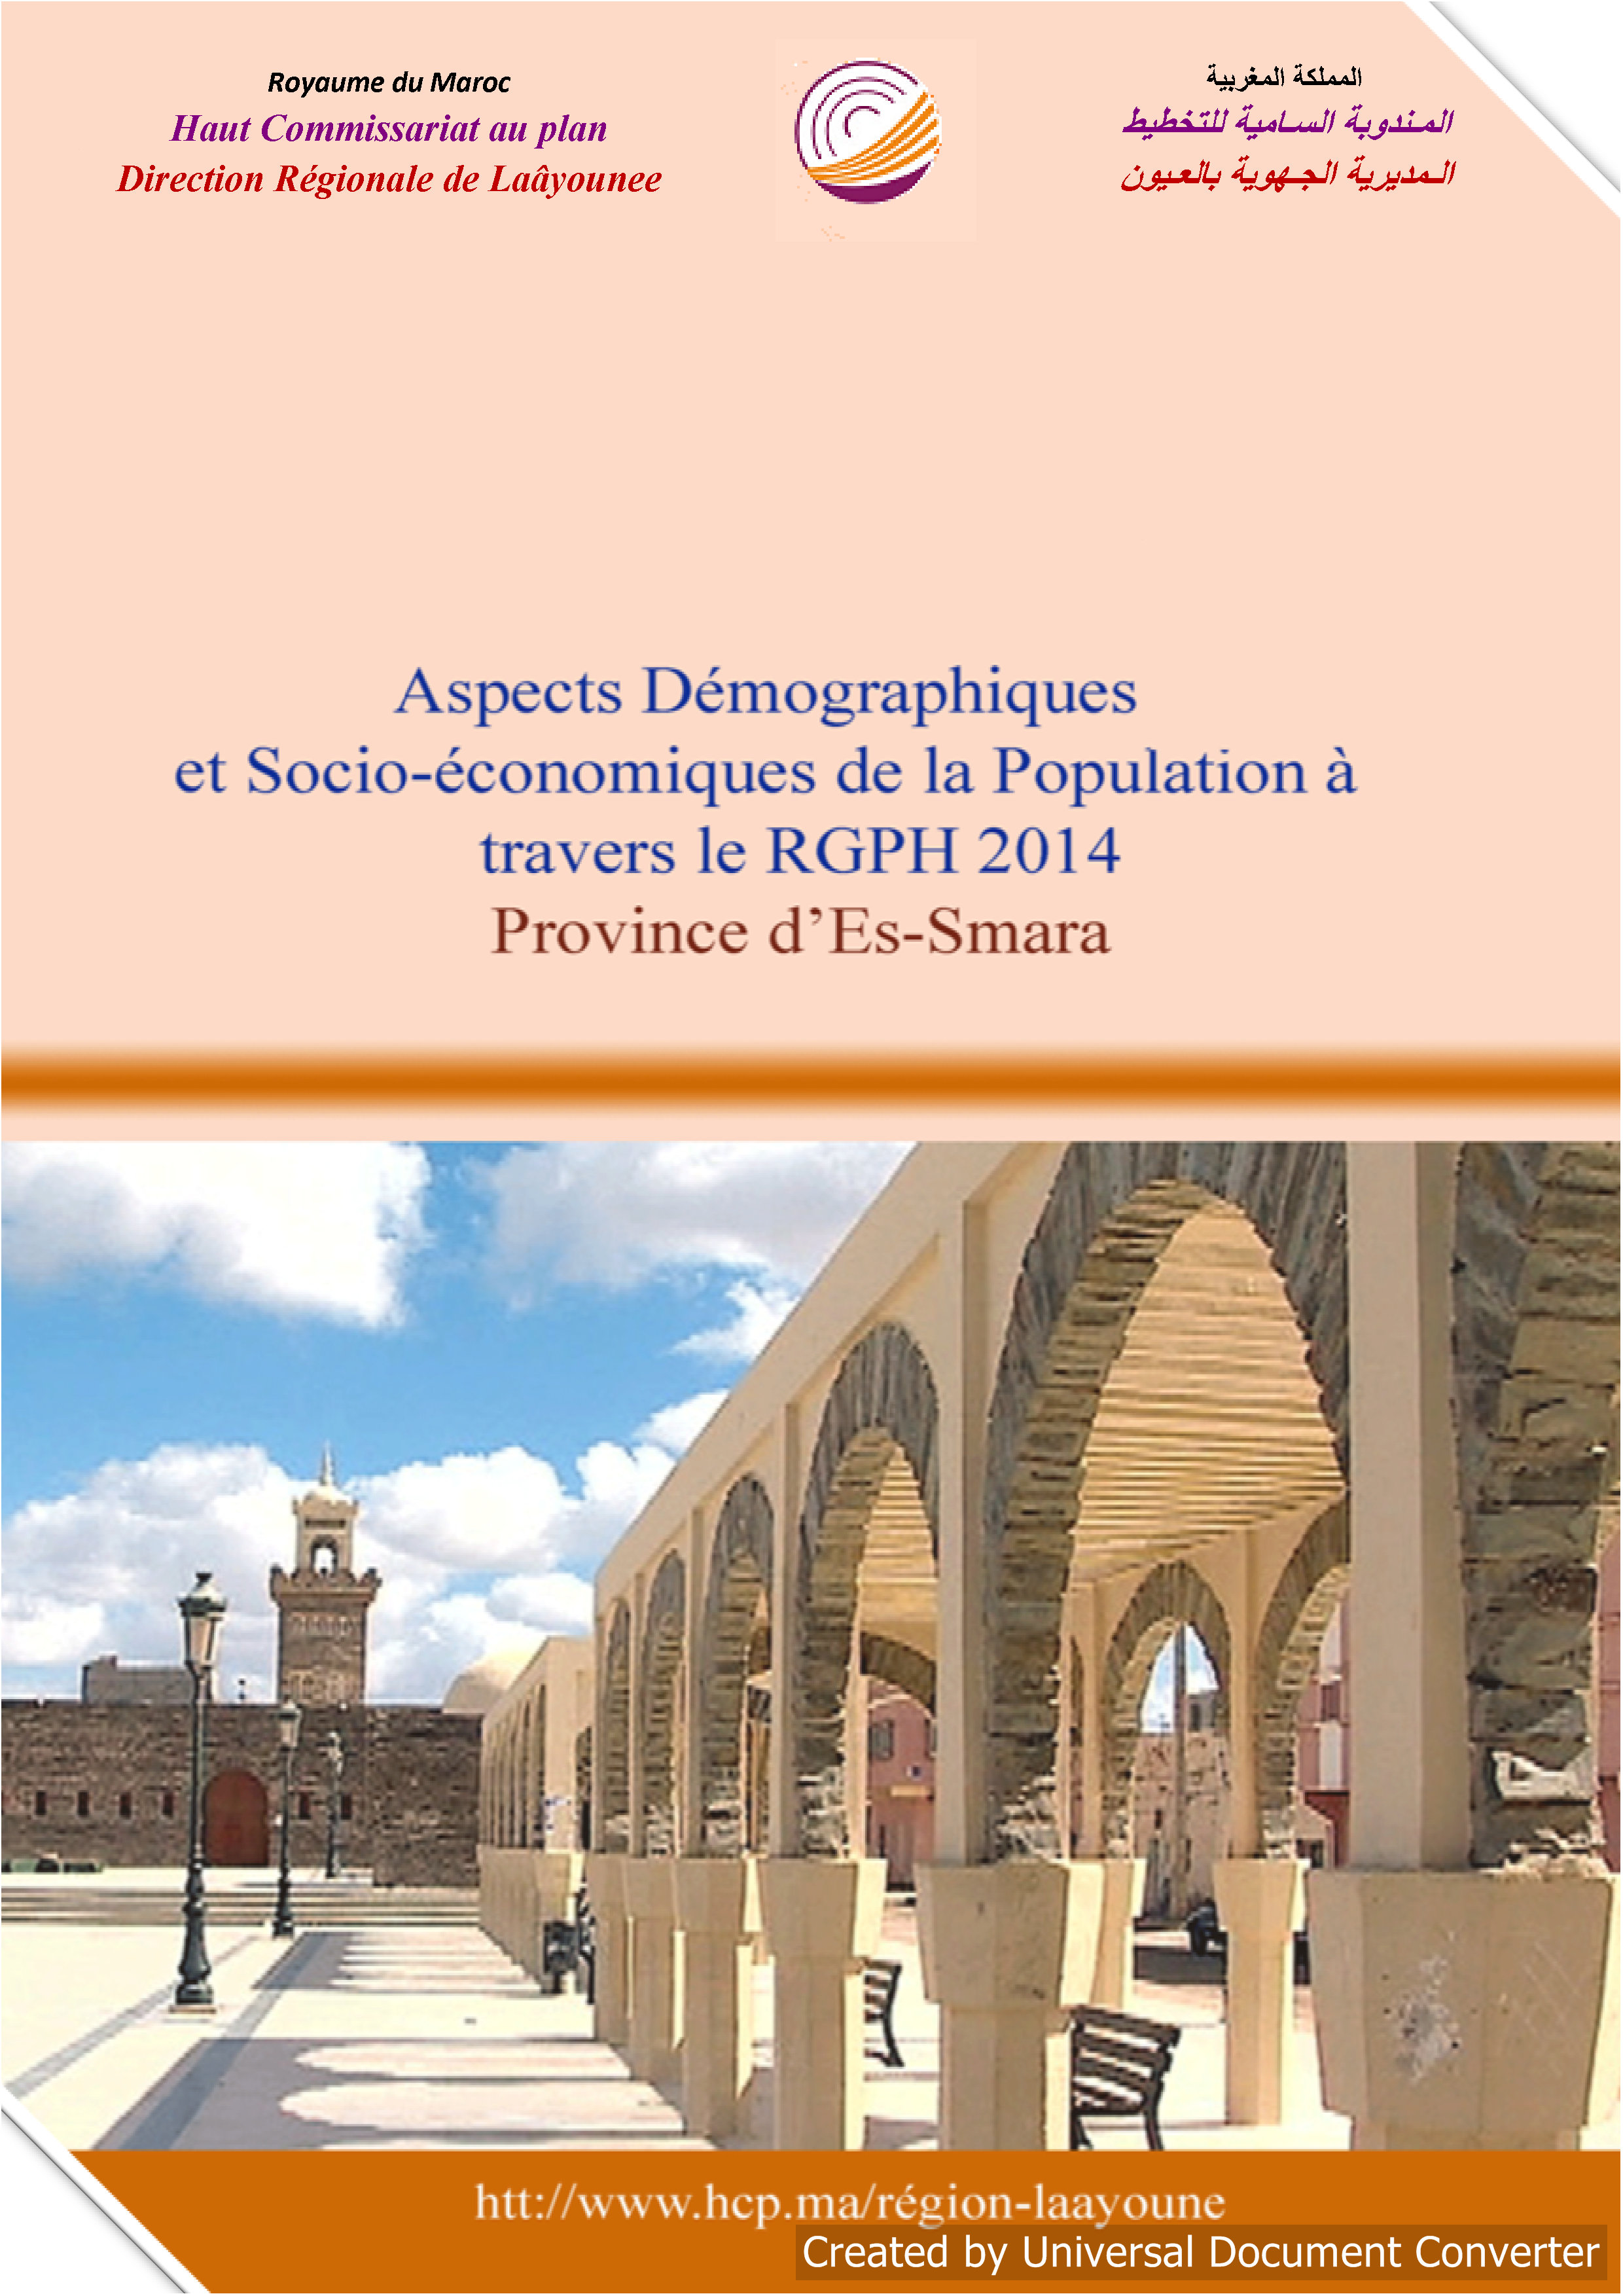 Aspects Démographiques et Socio-économiques de la Population à travers le RGPH 2014 Province d'Es-Smara.